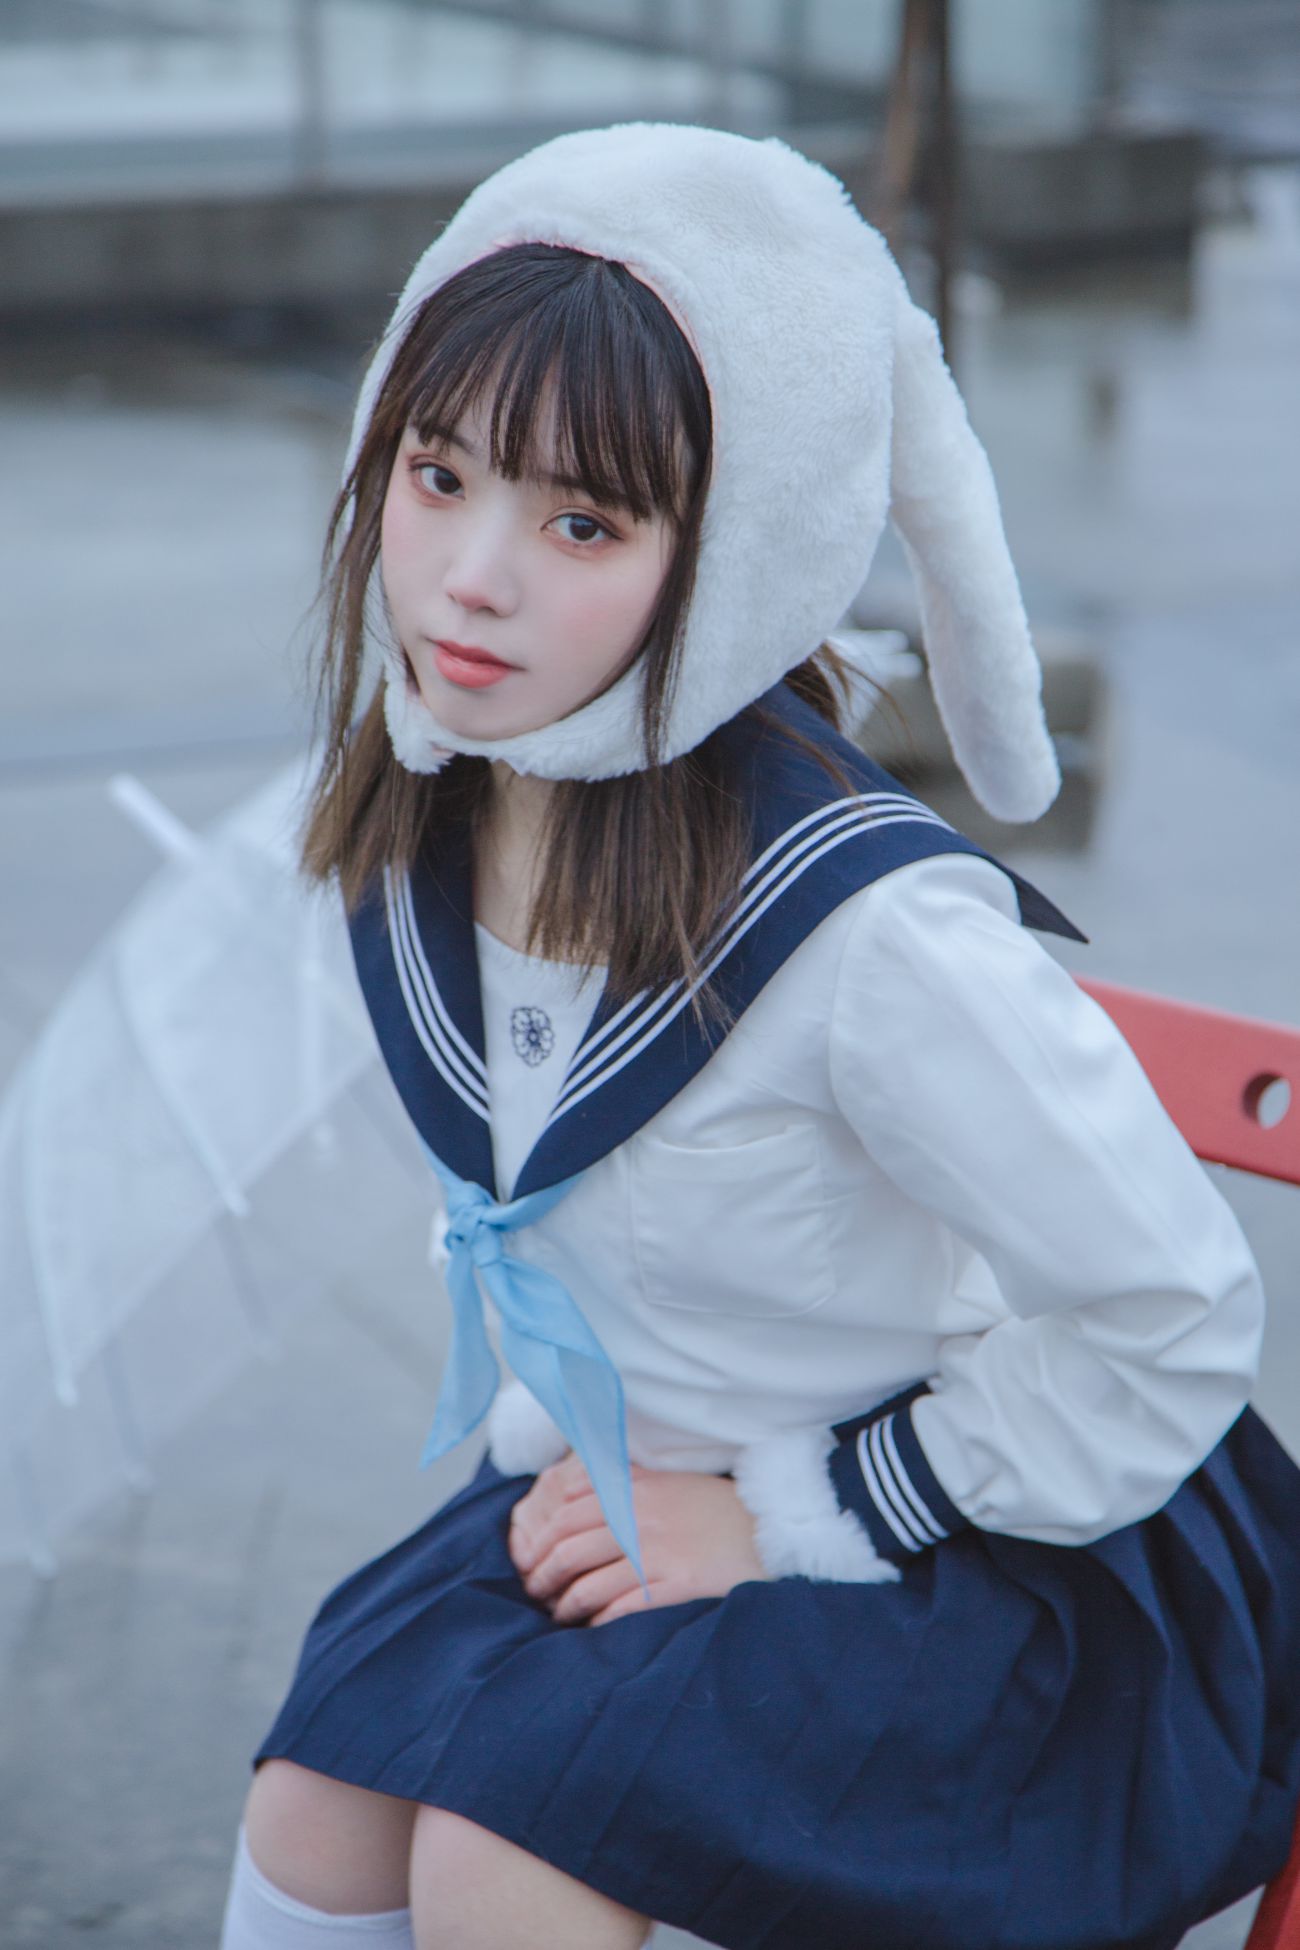 微博美少女Fushii海堂Cosplay性感写真兔兔头 (21)